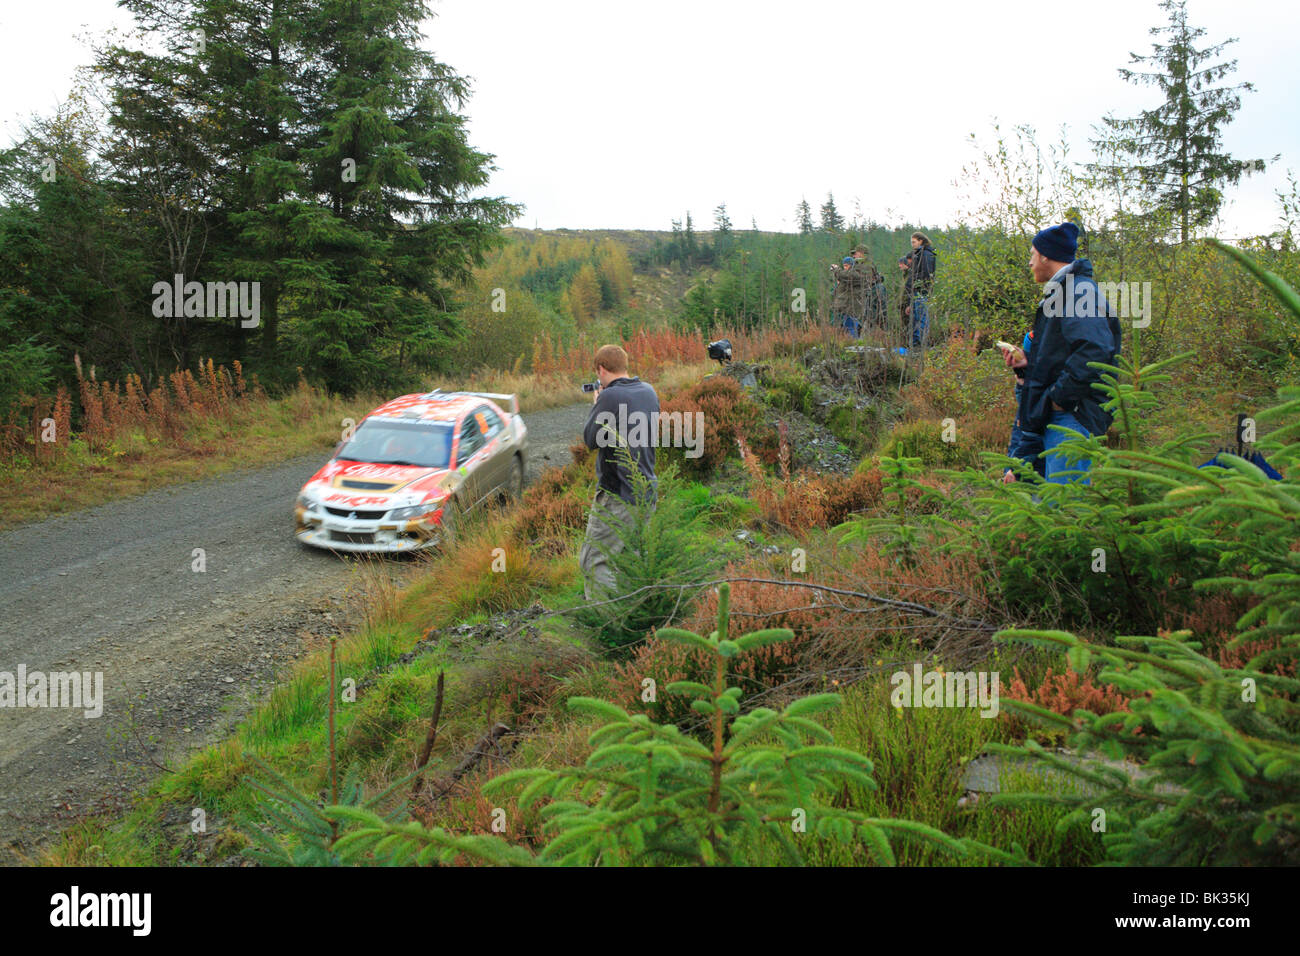 Los espectadores fotografiando un competidor en el WRC especial celebrada en el bosque de Hafren, cerca de Llanidloes, Powys, Gales. Foto de stock